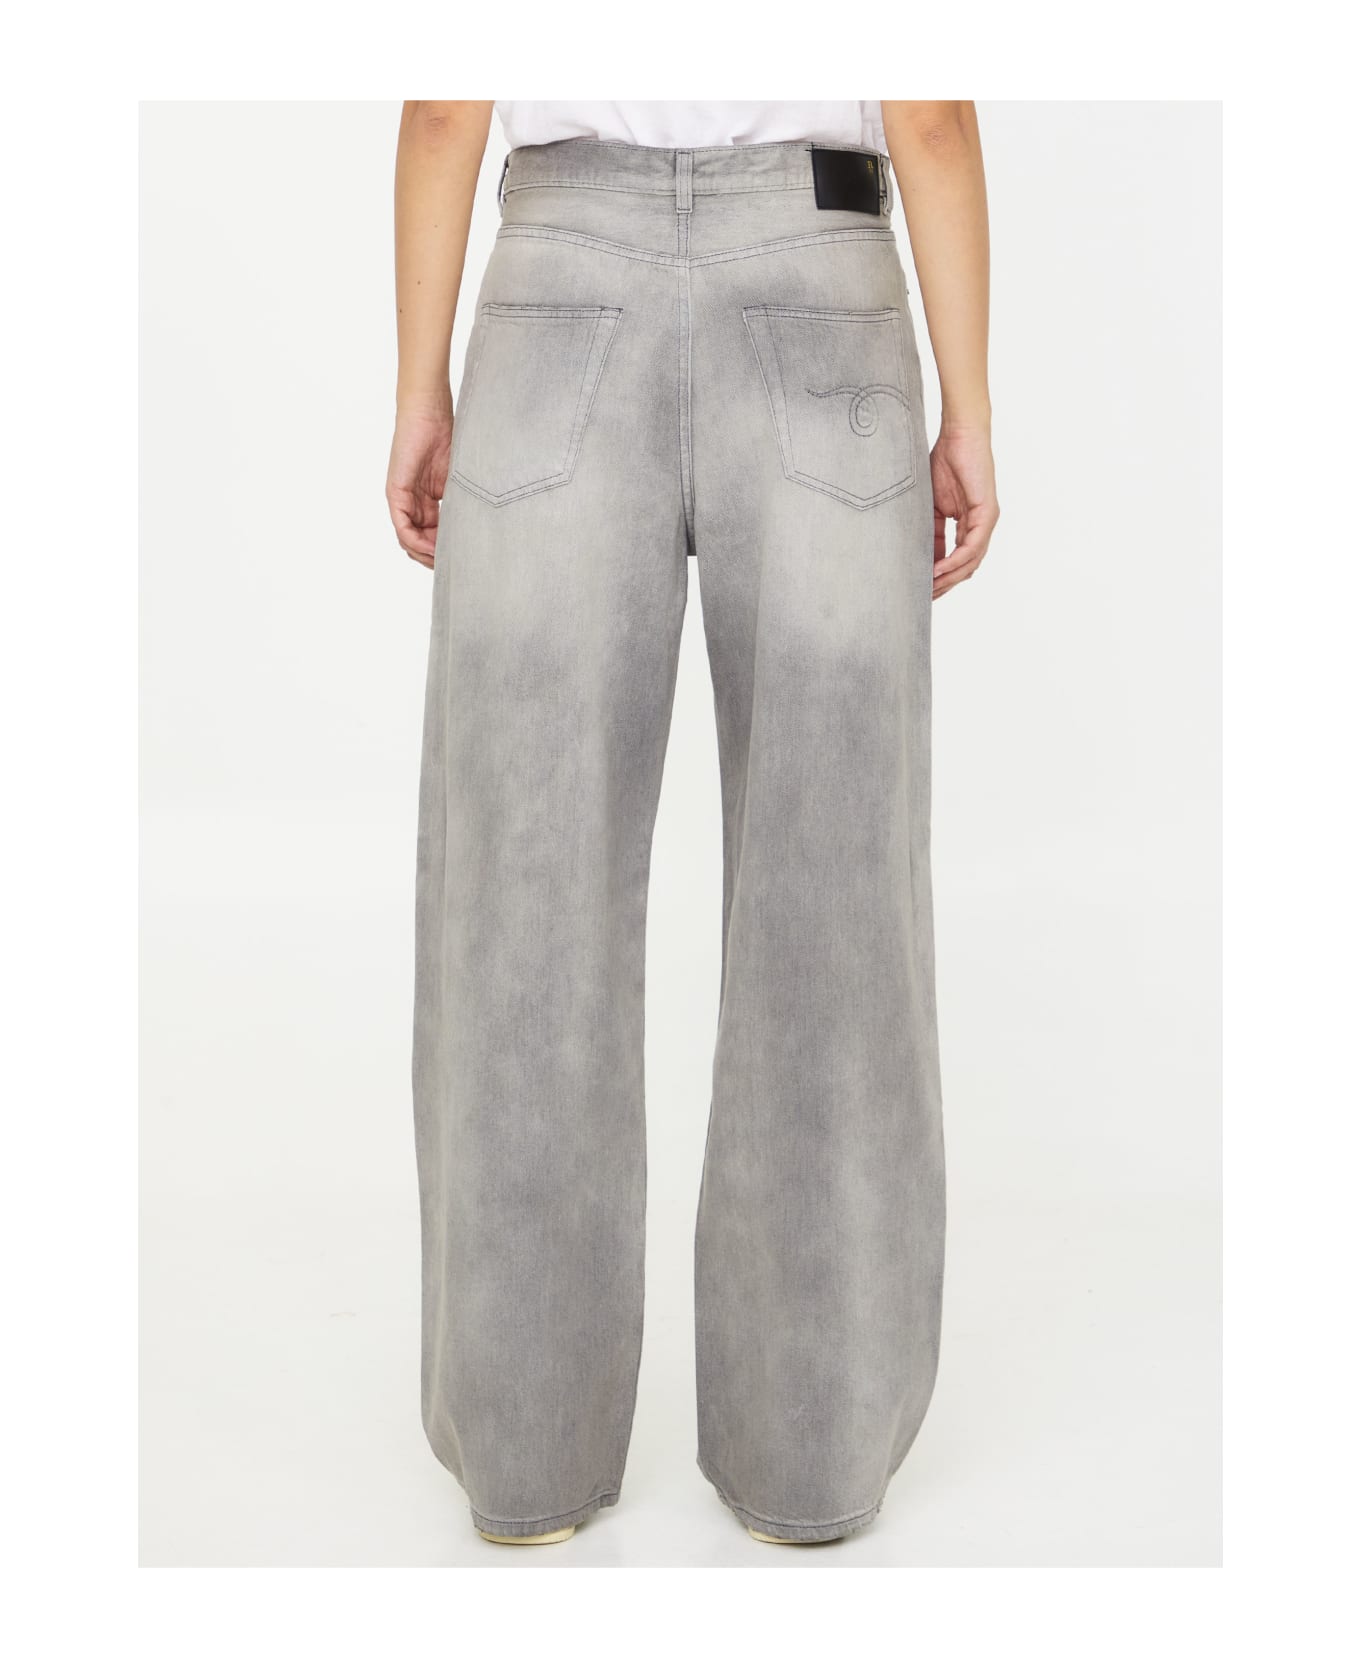 R13 Grey Denim Jeans - GREY